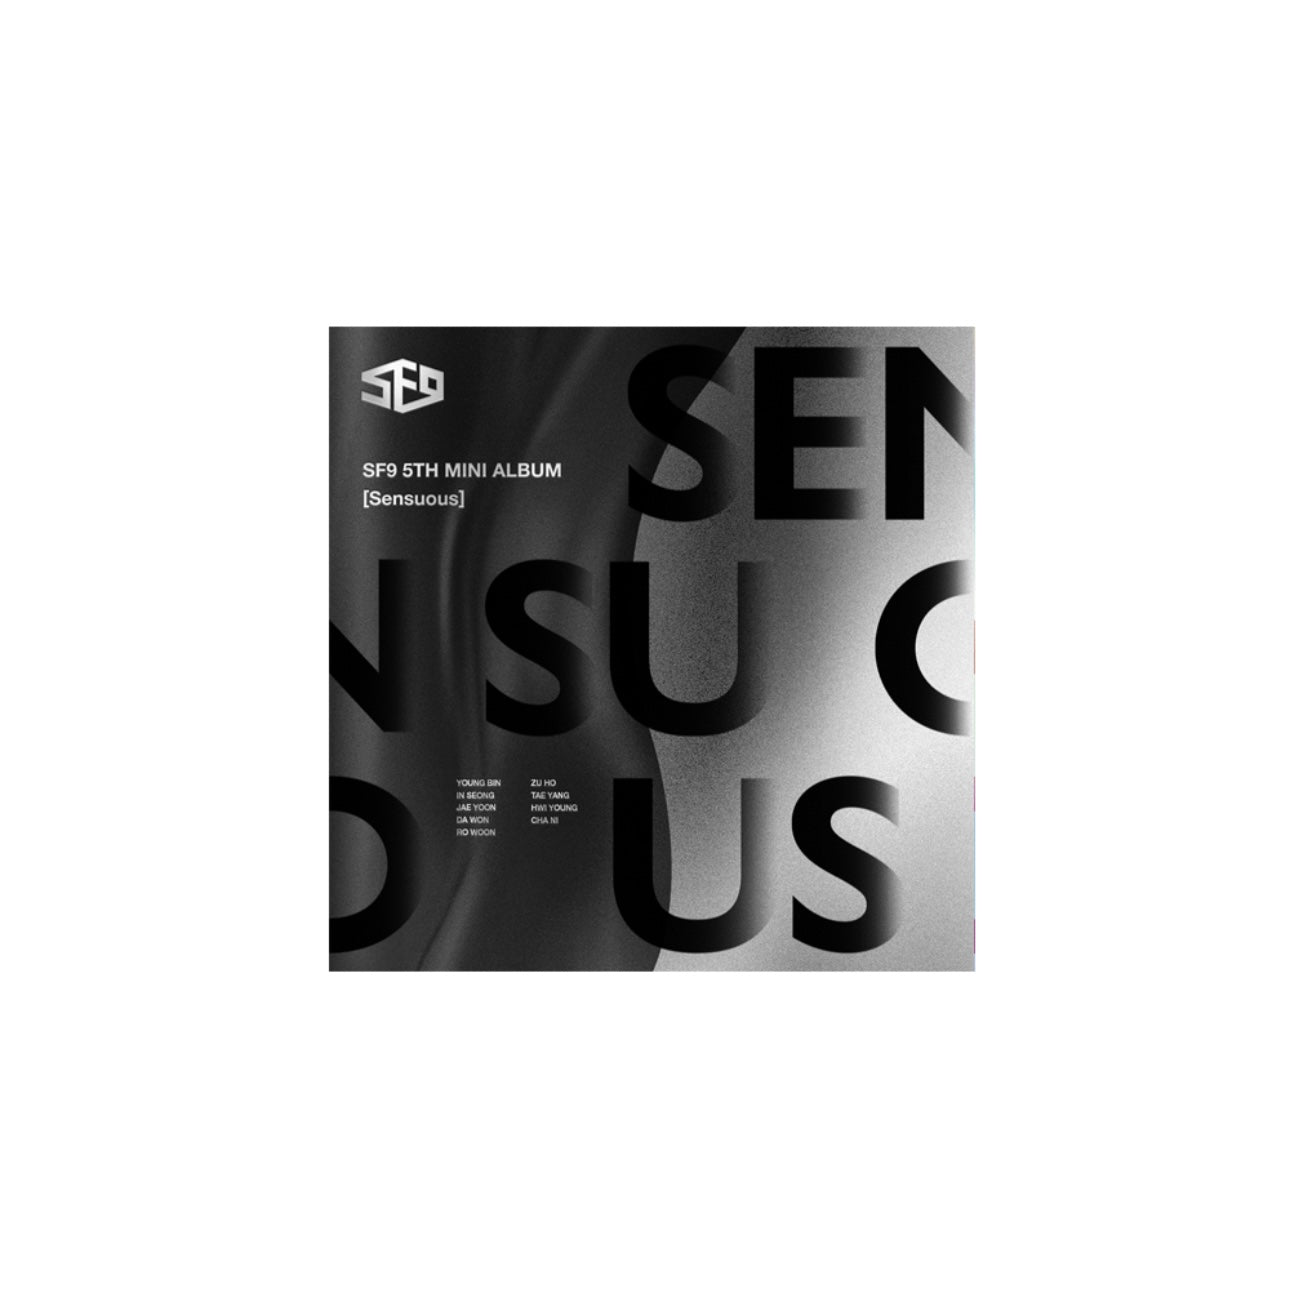 SF9 - SENSUOUS (5TH MINI ALBUM) (2 VERSIONS)